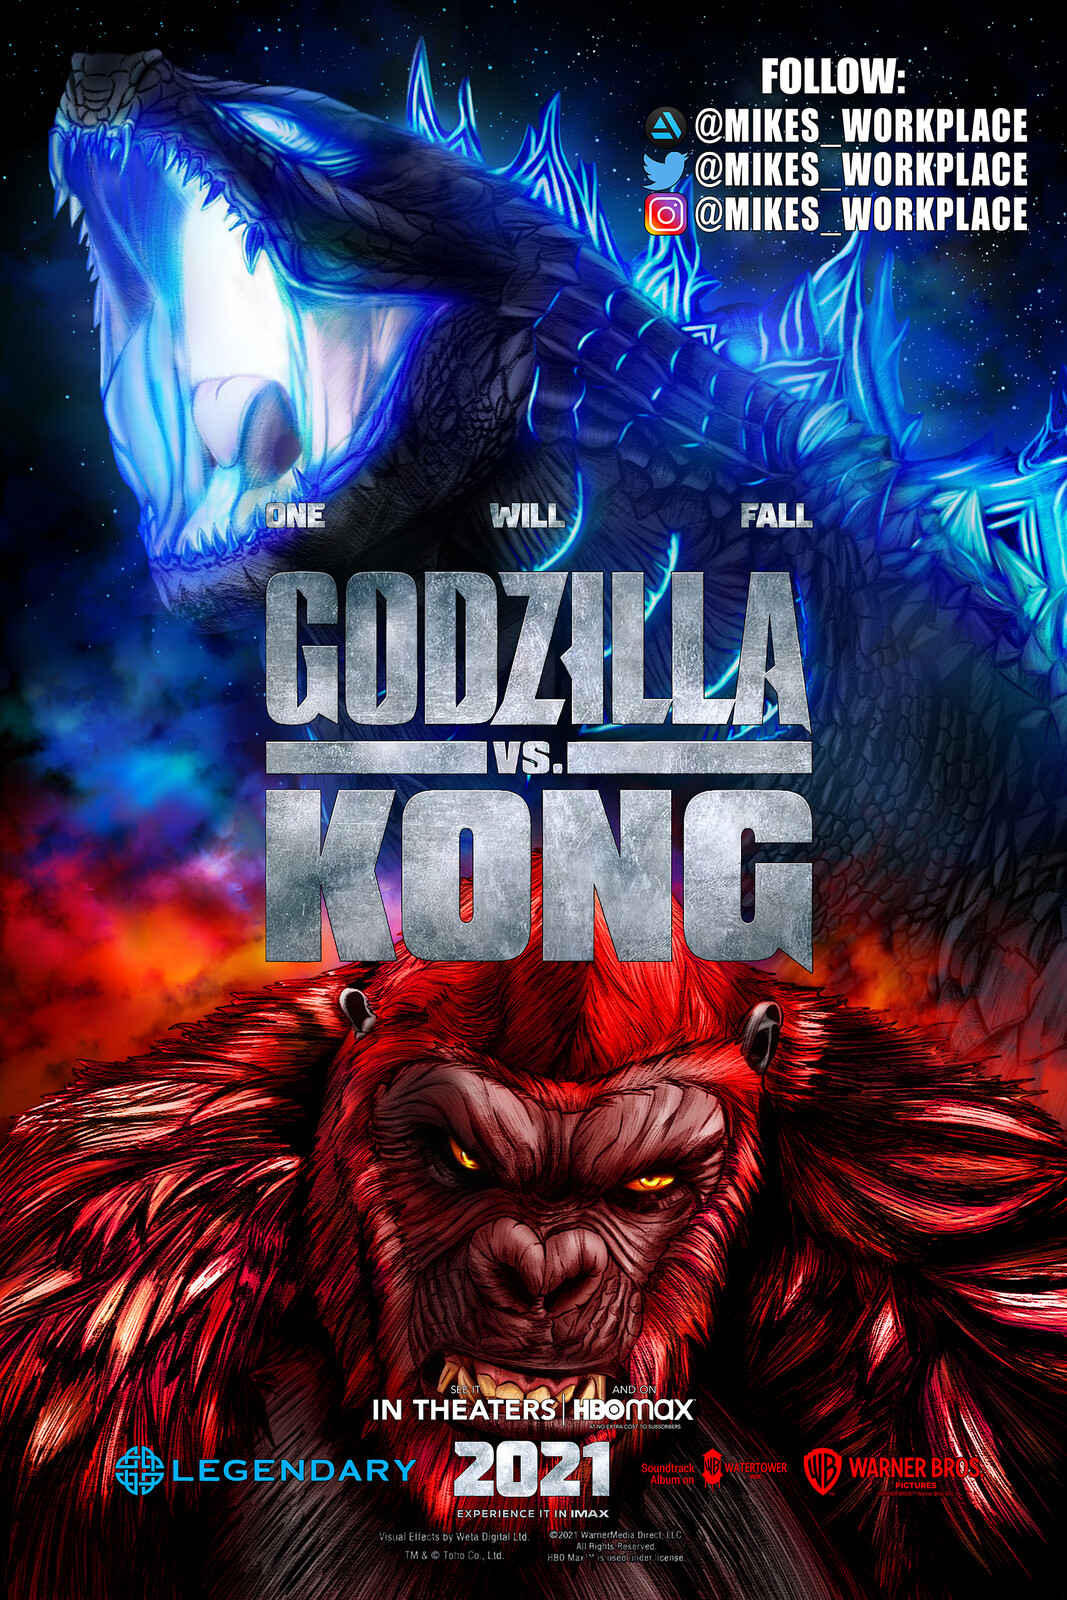 mikes_ workplace - Godzilla vs Kong Fan Art Poster 2021